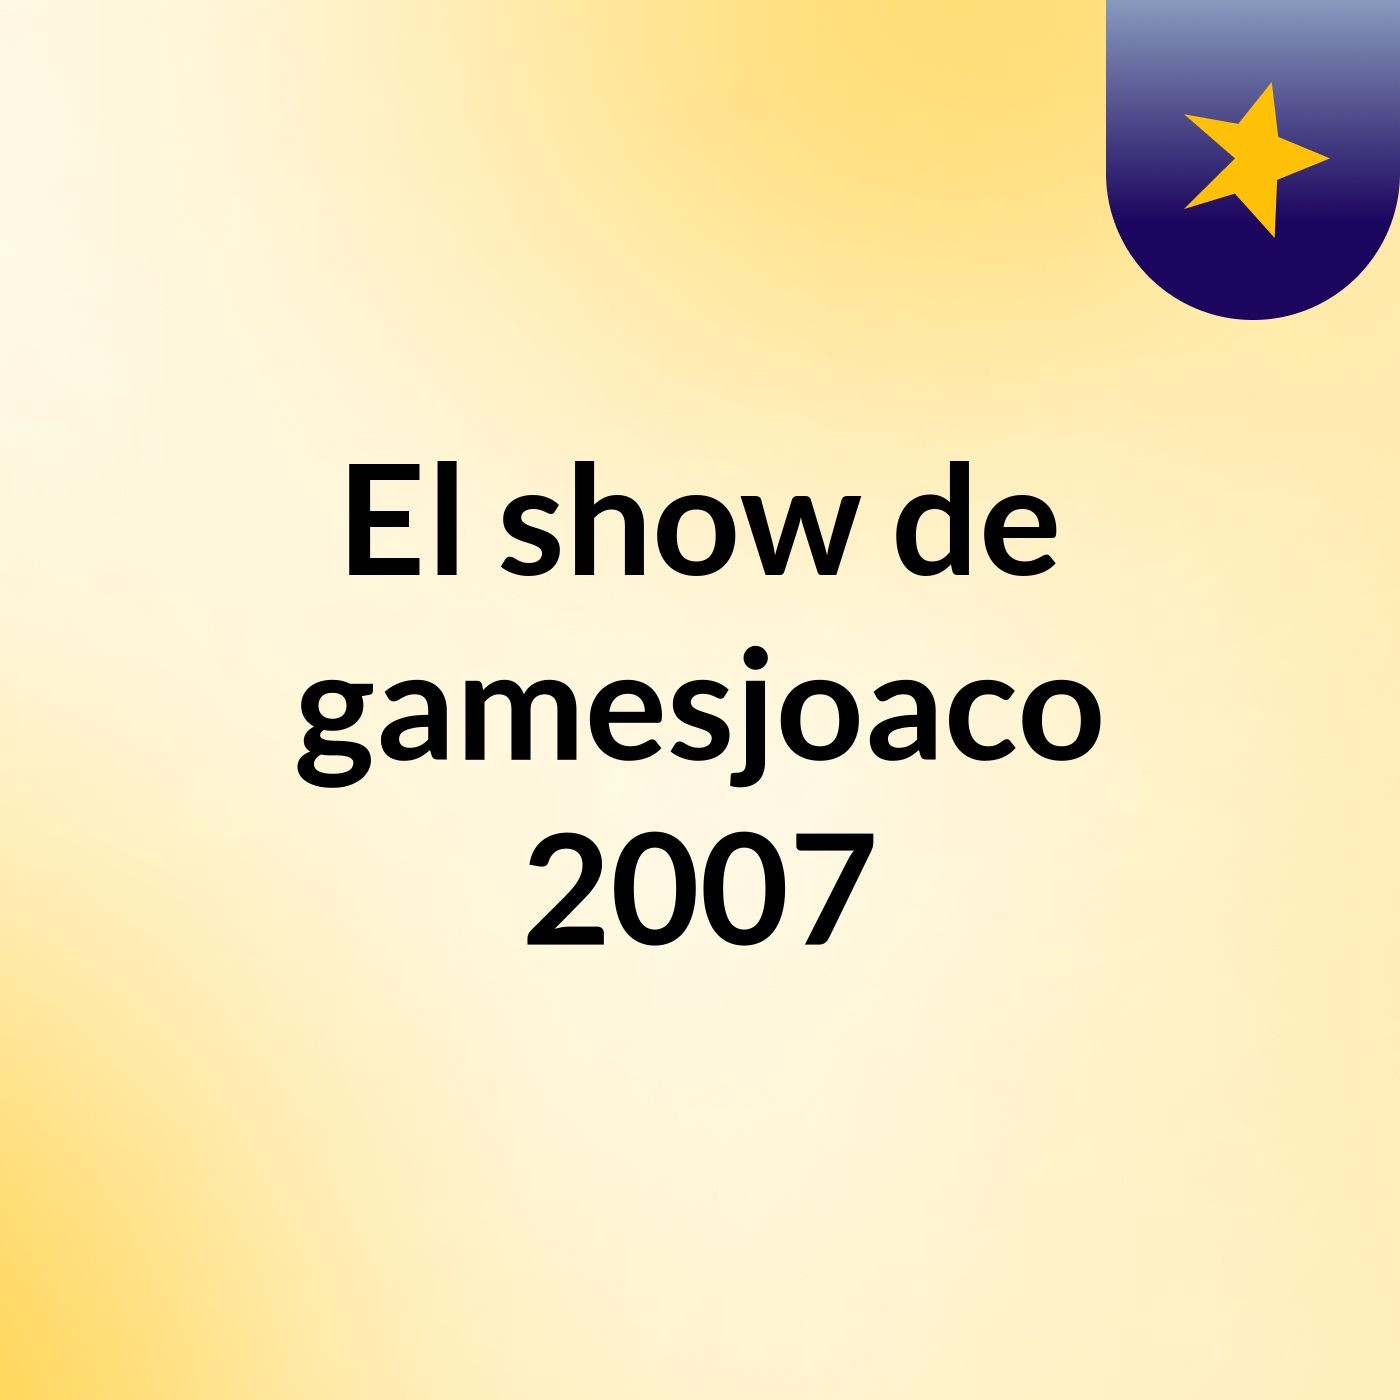 El show de gamesjoaco 2007